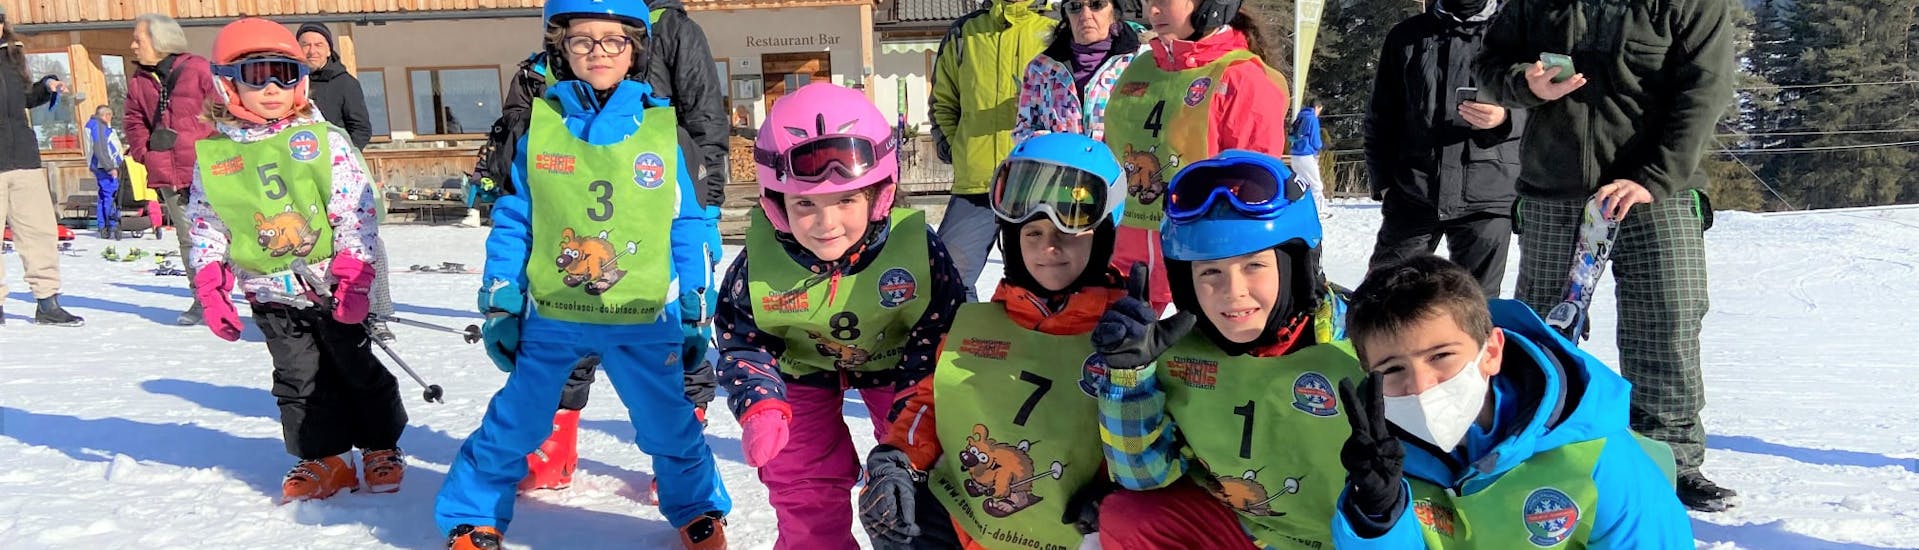 Skilessen voor kinderen vanaf 7 jaar voor alle niveaus.